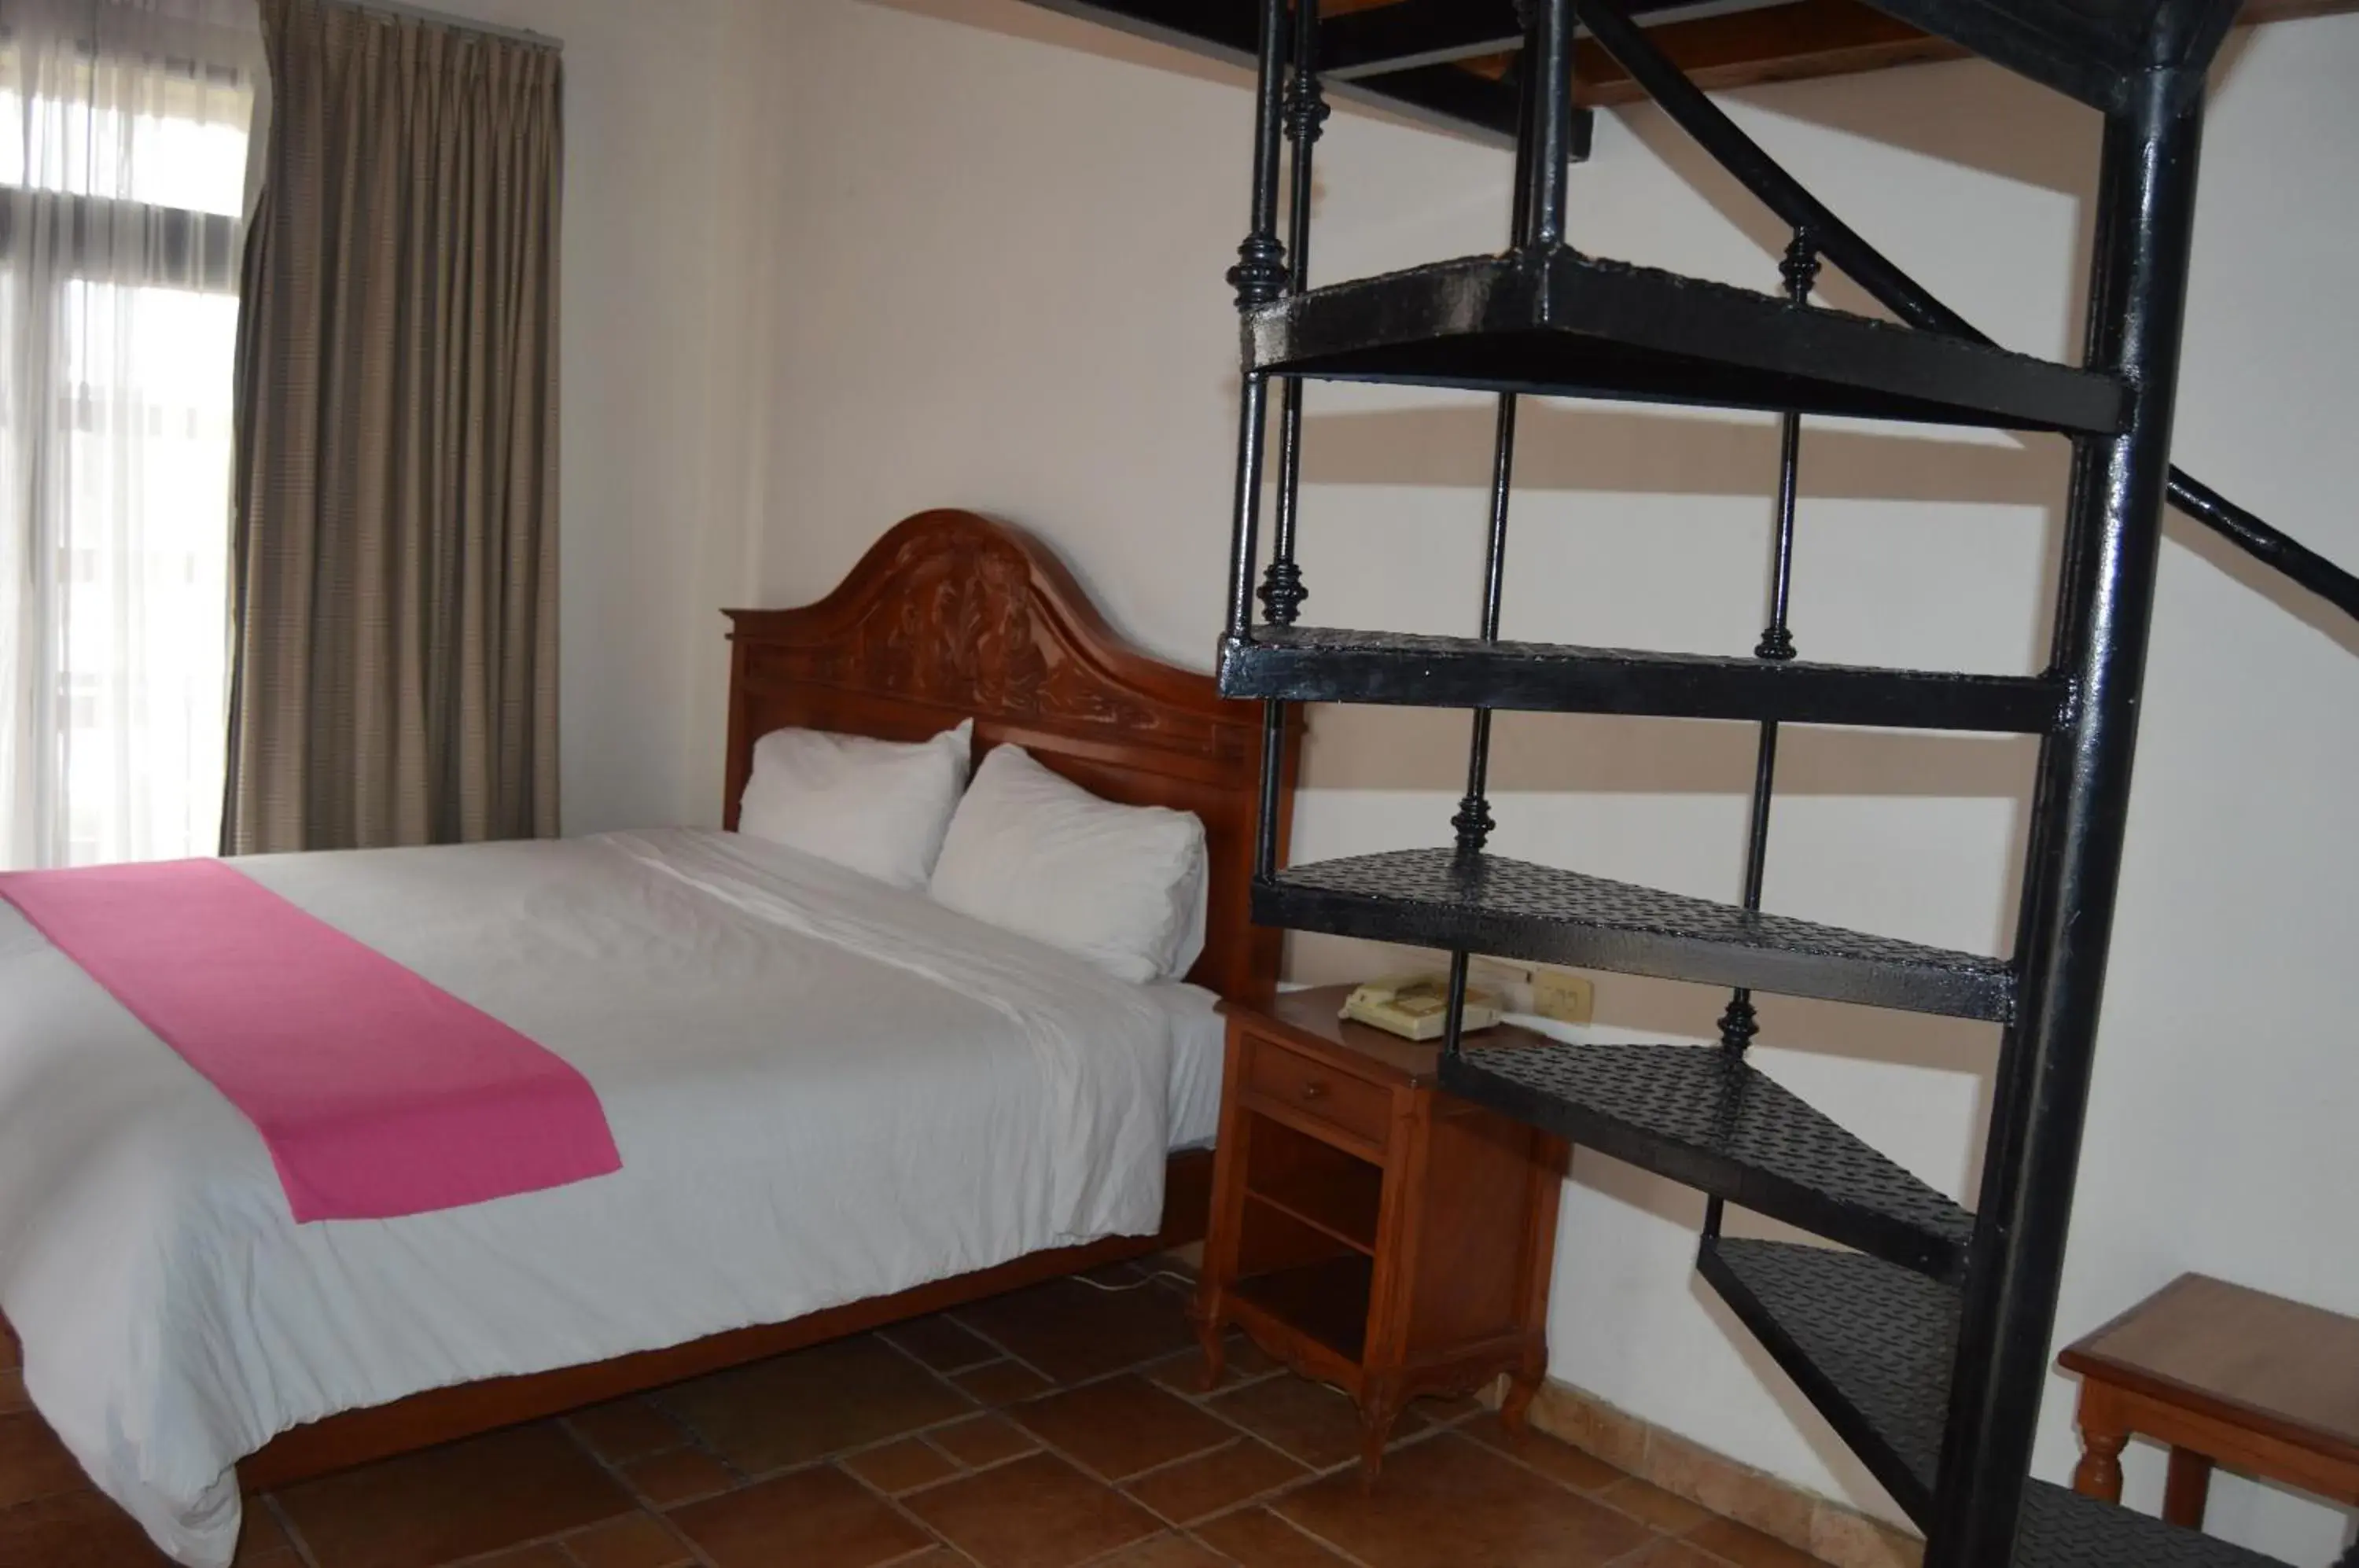 Bedroom, Room Photo in Hotel Meson del Mar